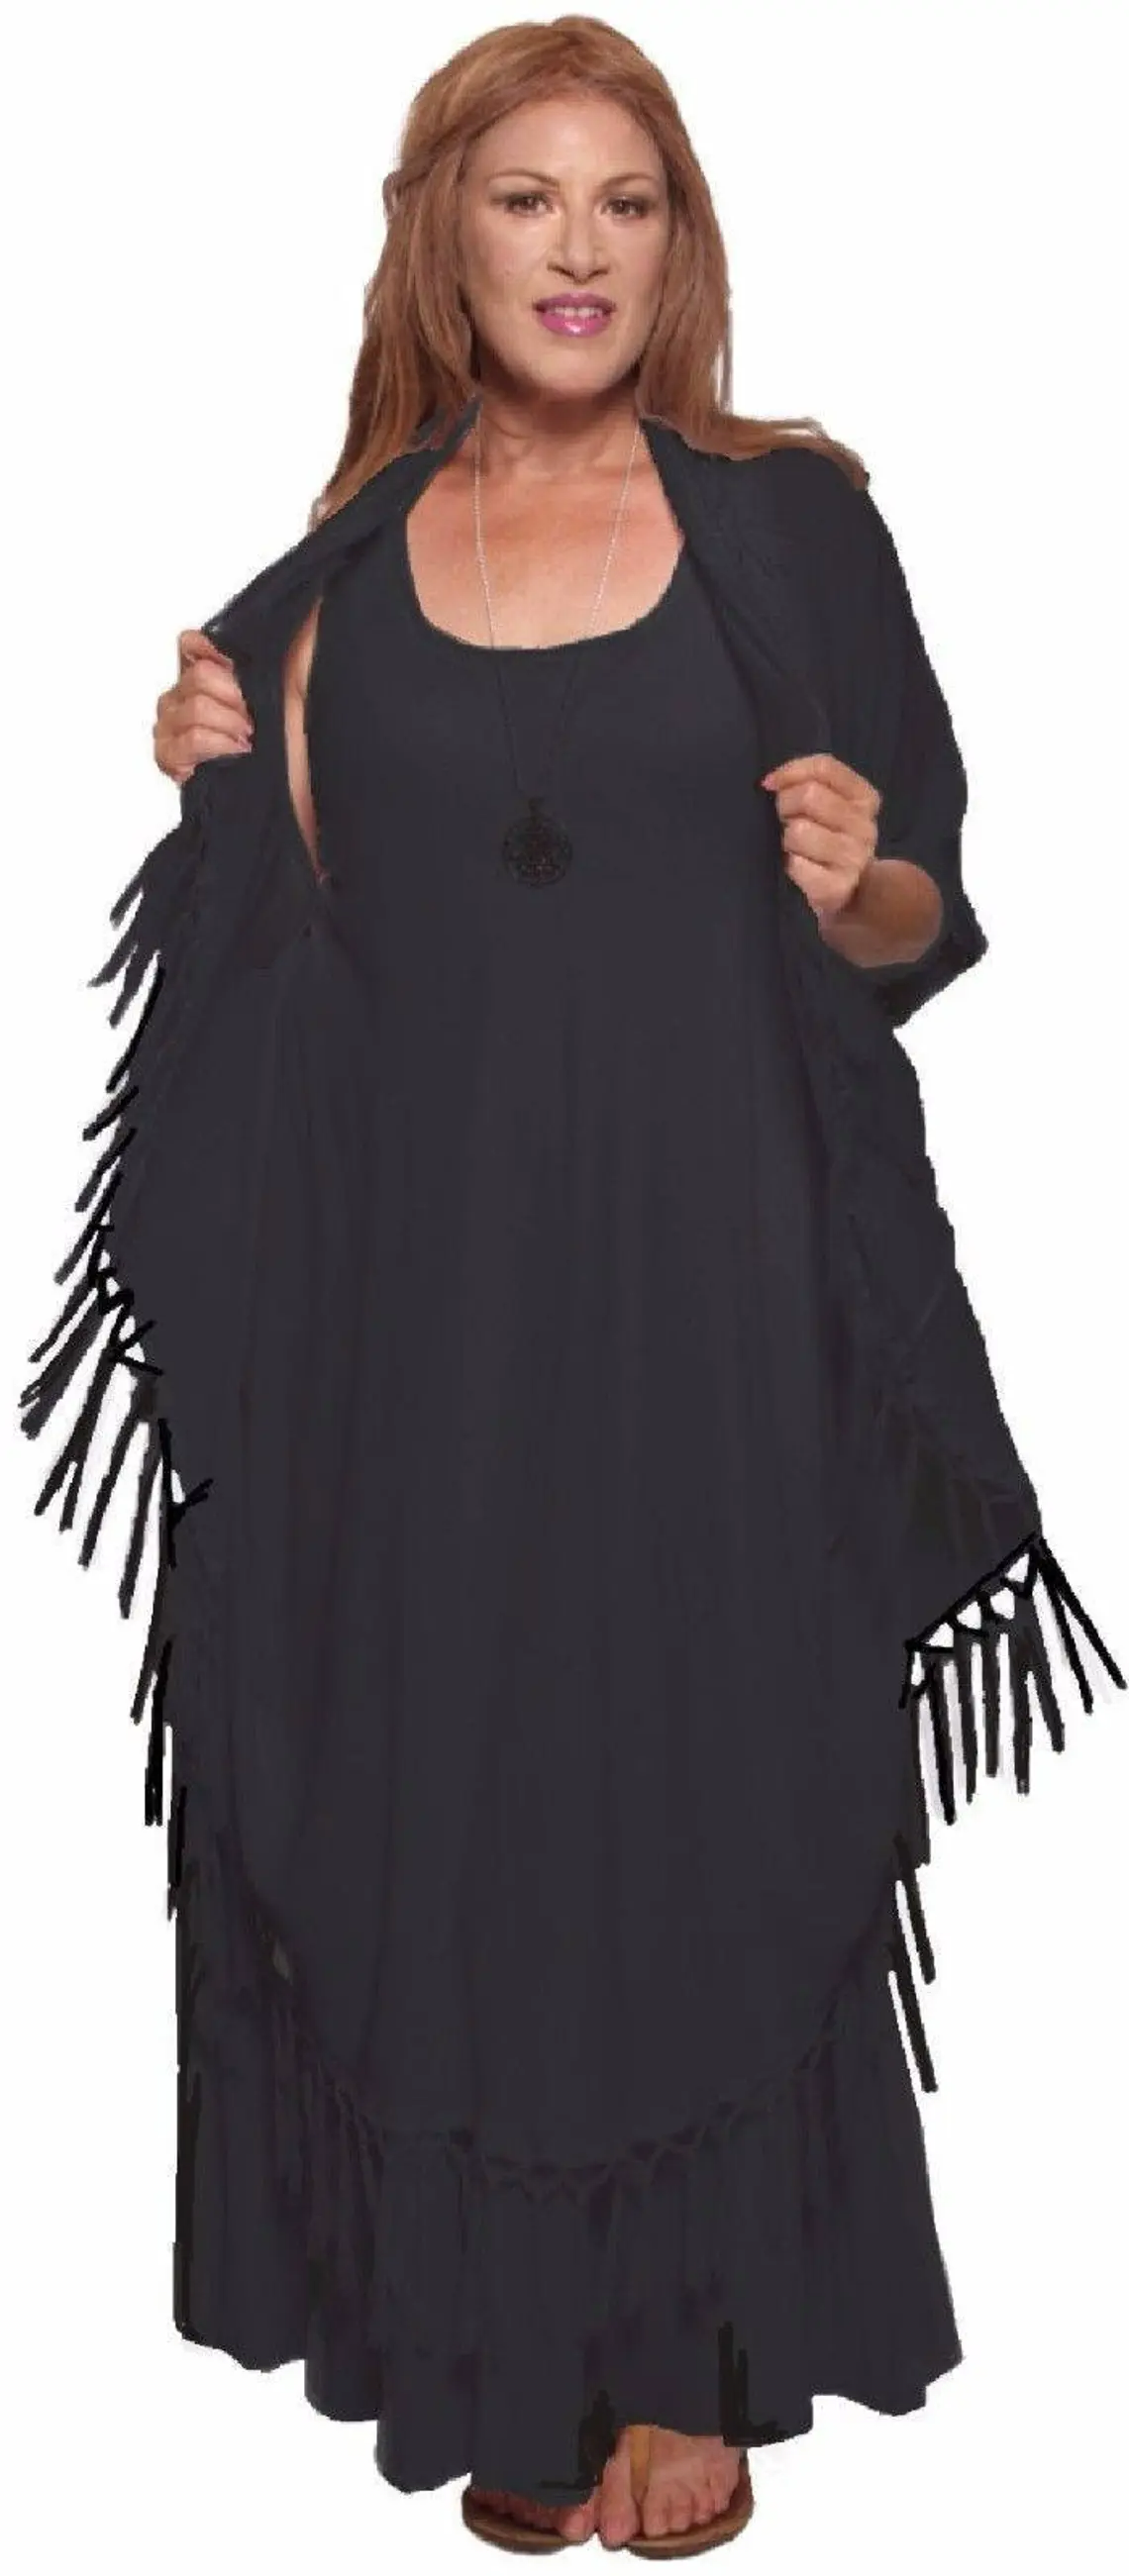 Moroccan Magic Dress Zwart in alle maten tot 5X